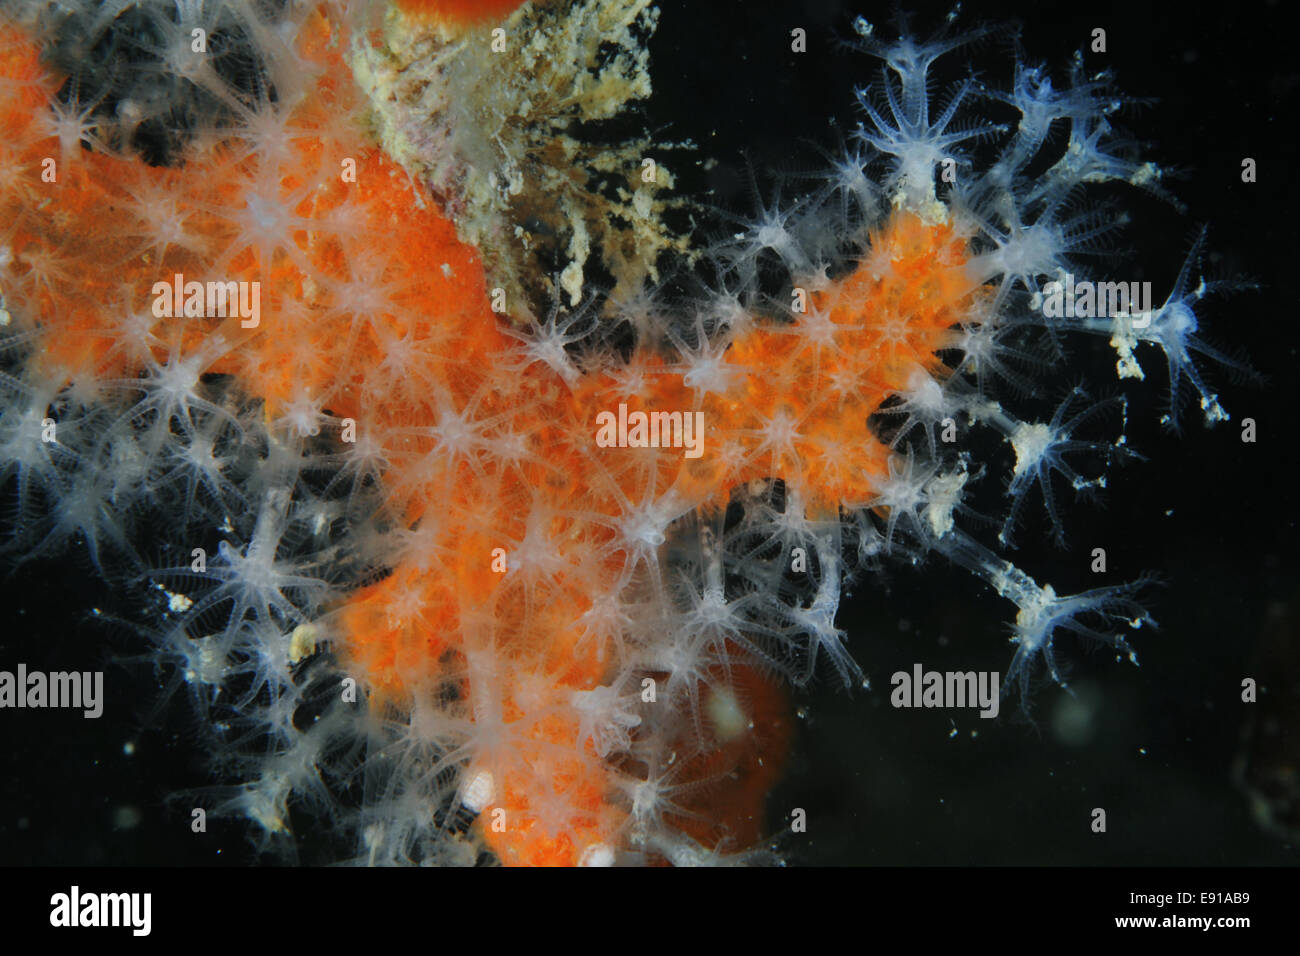 Colonia de dedos del hombre muerto coral blando con pólipos blancos extendidos. Foto de stock